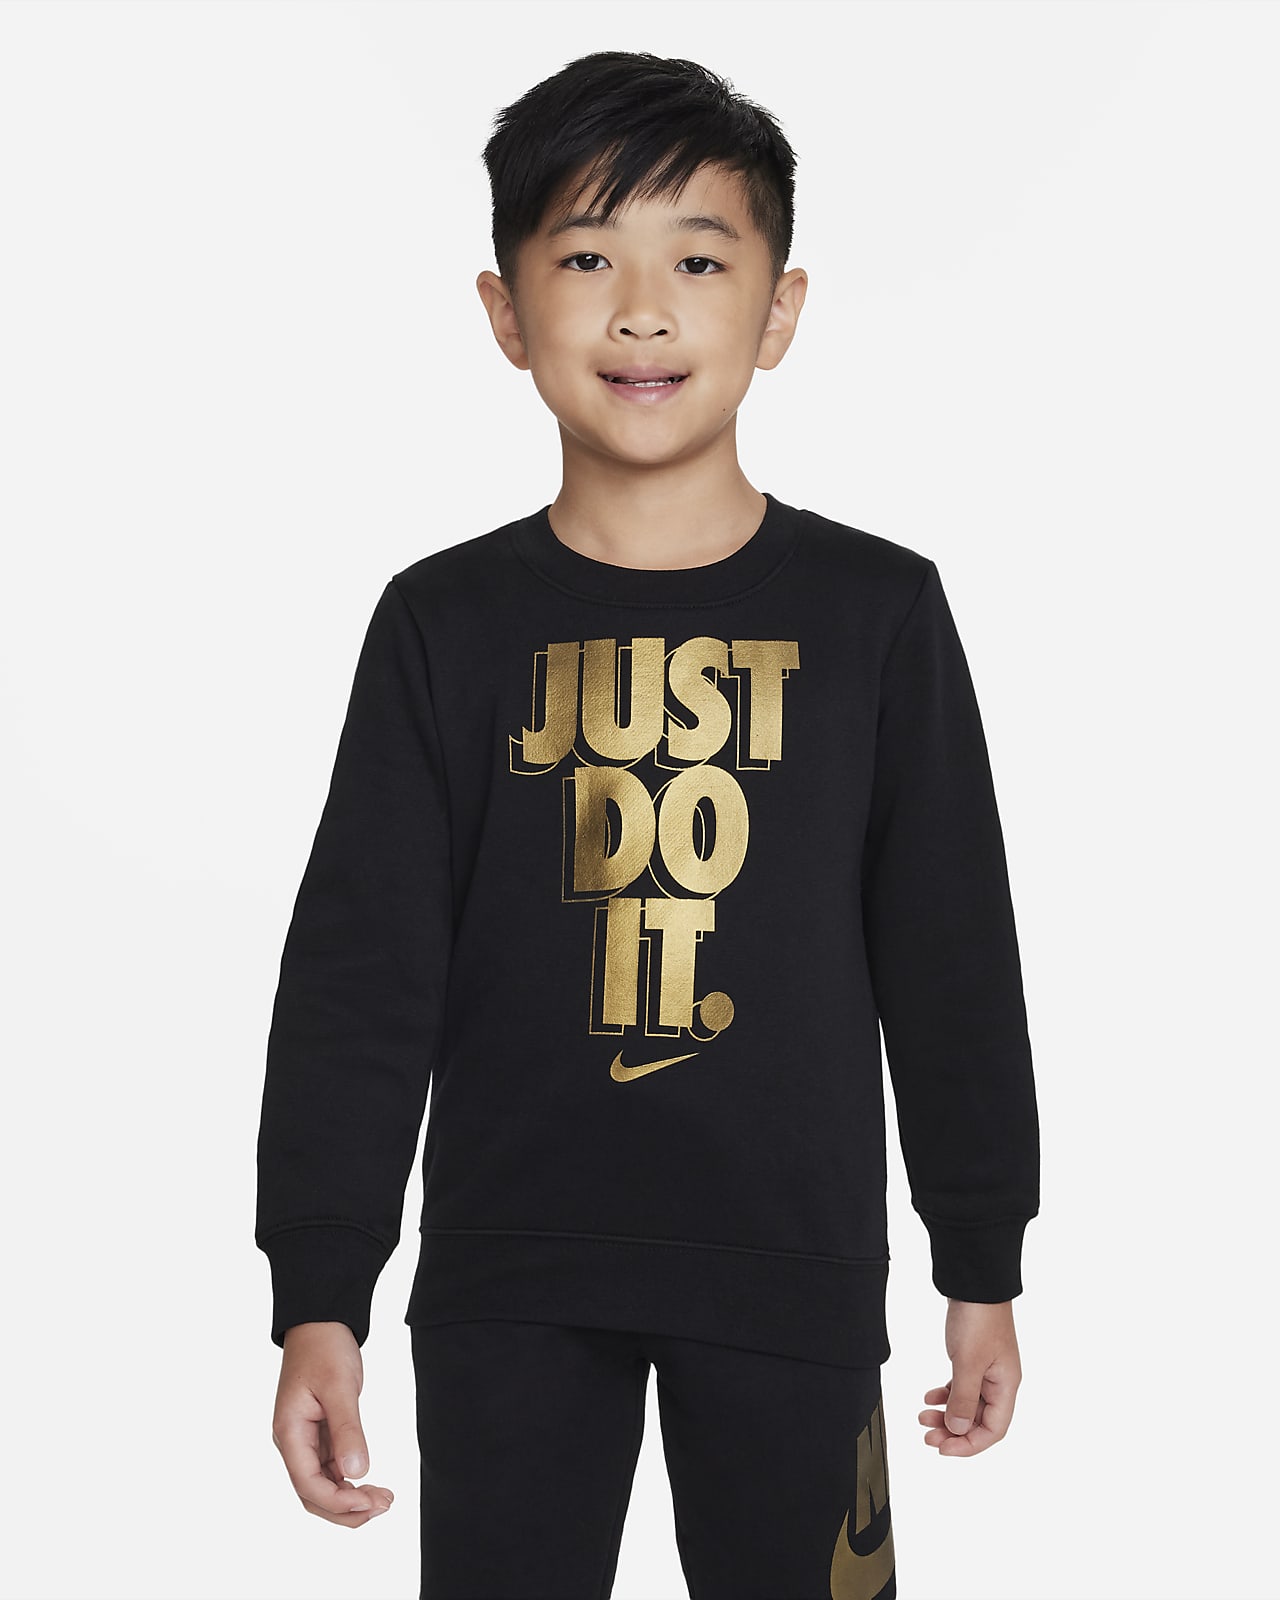 Just Do It Gifting Crewneck de cuello redondo - Niño/a pequeño/a. Nike ES